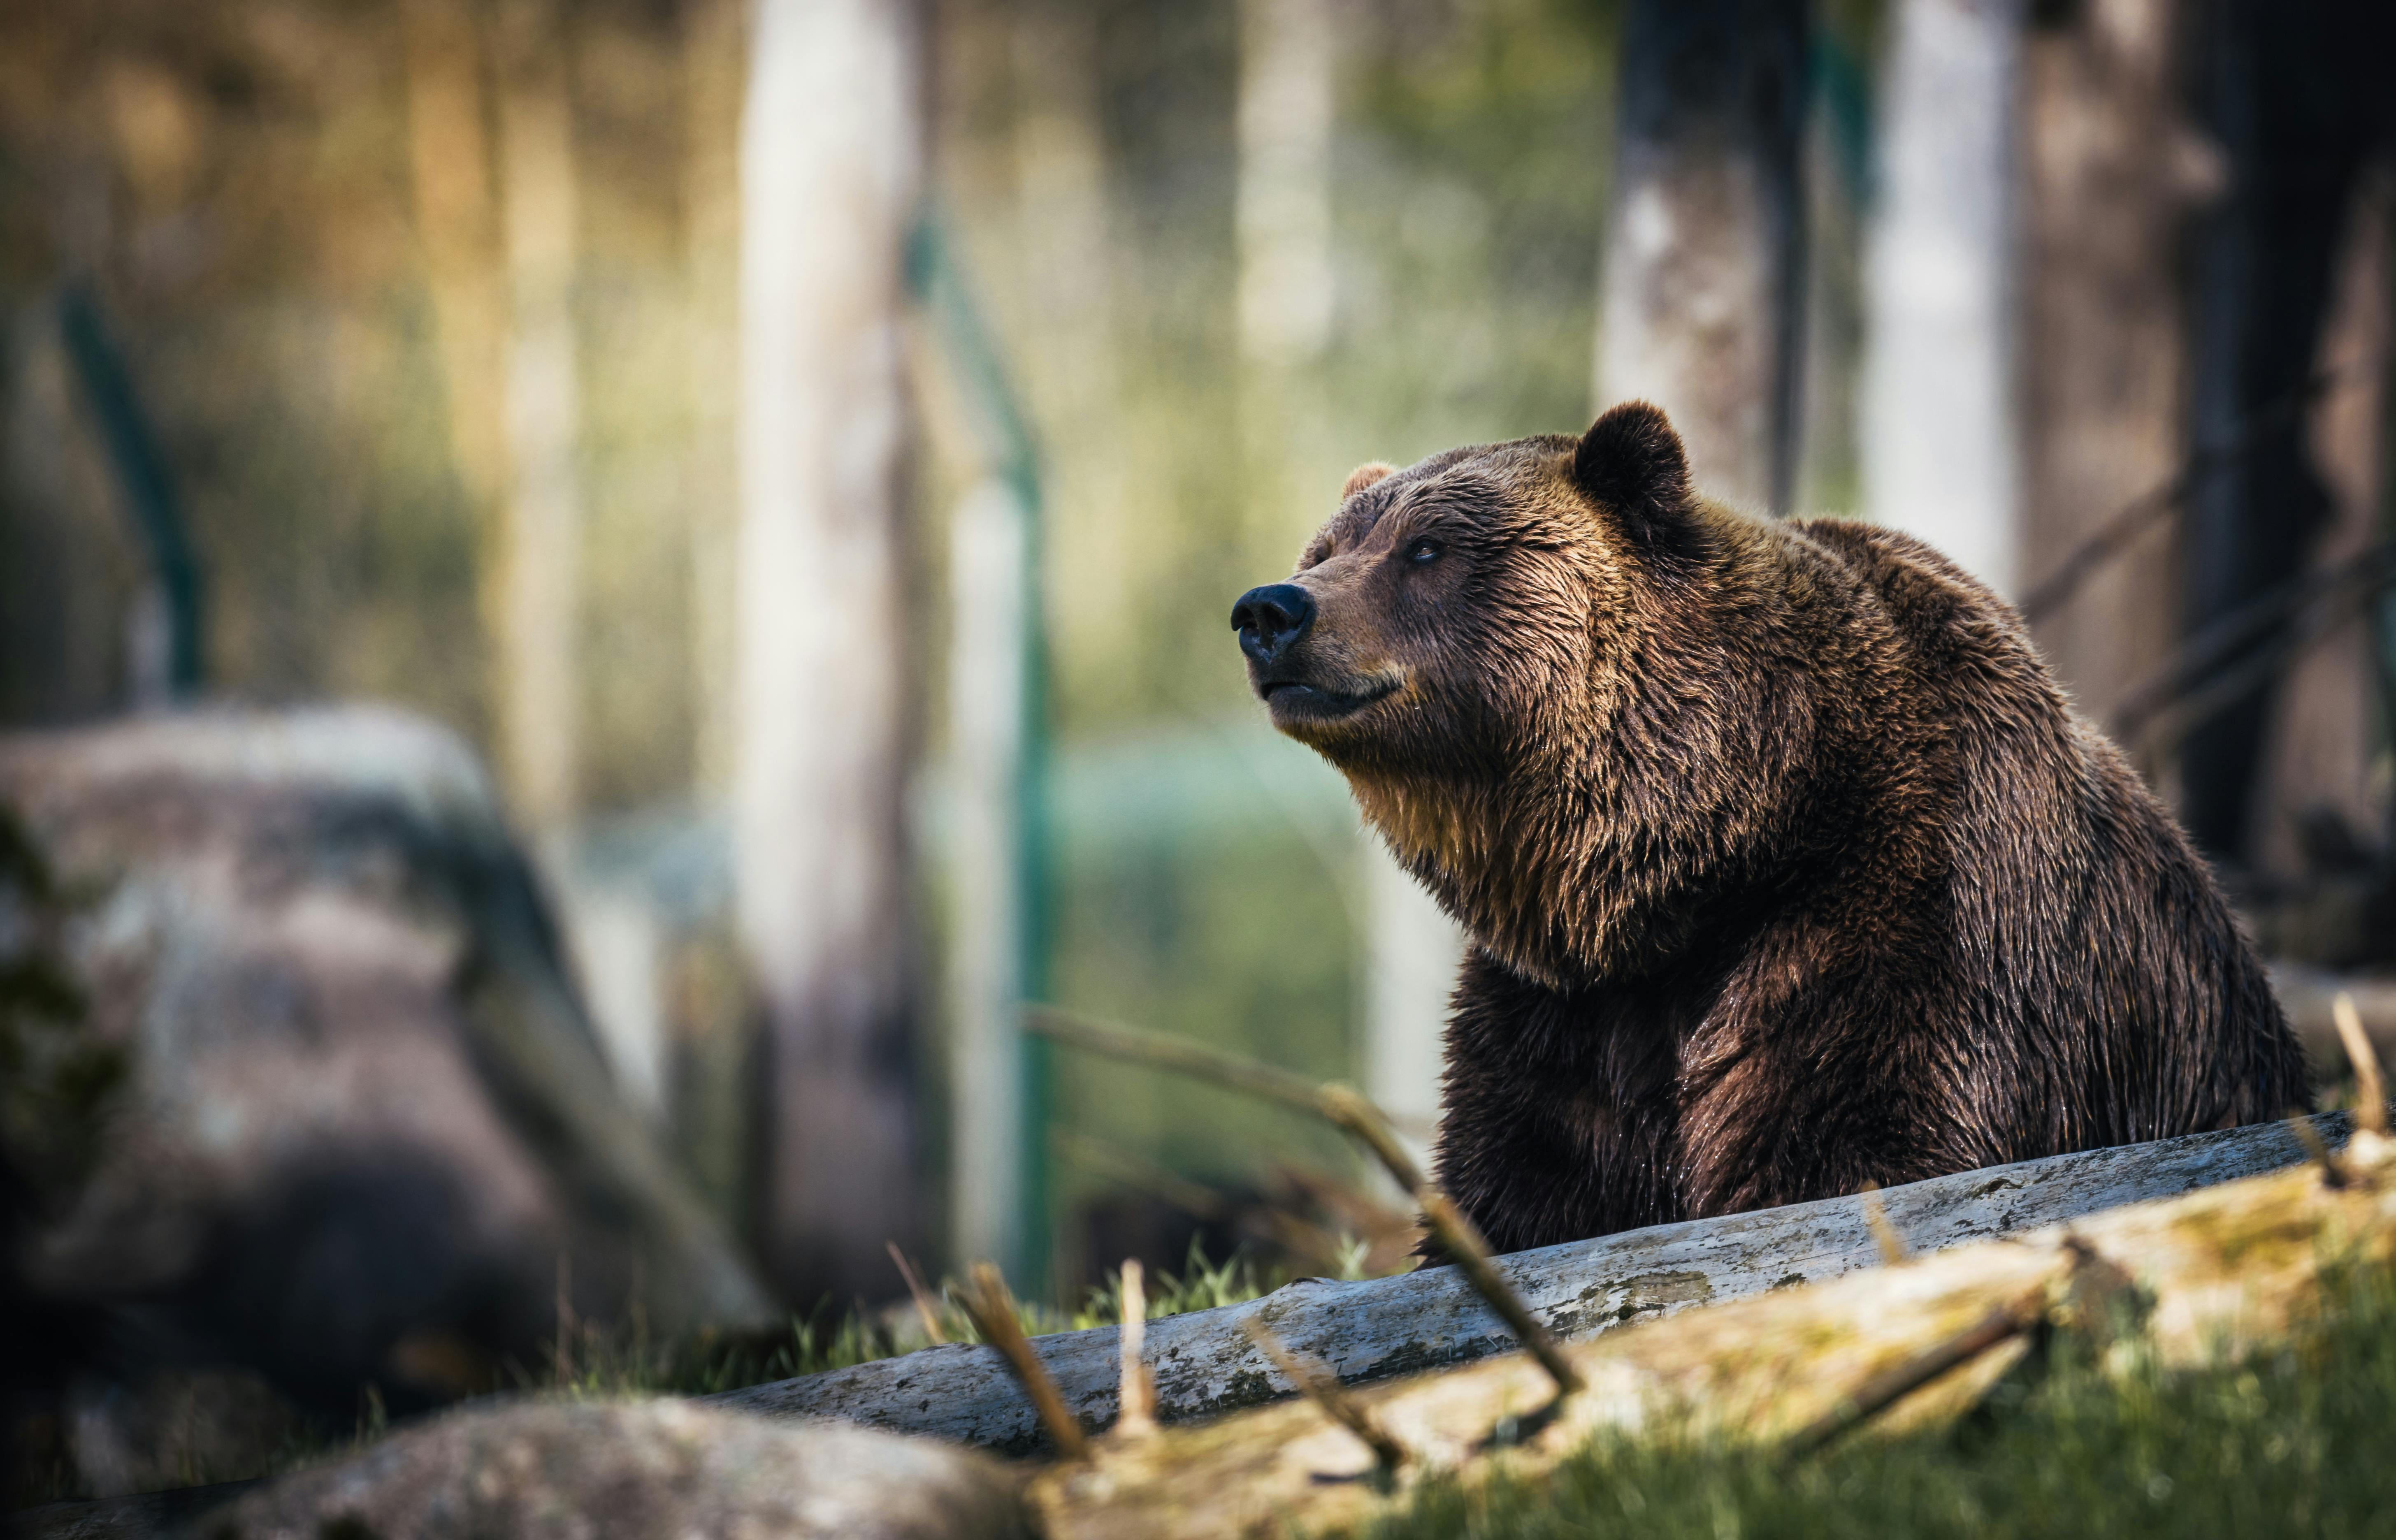 登山 怖い熊に会わないために 18年 出会う確率は 対策や注意点など